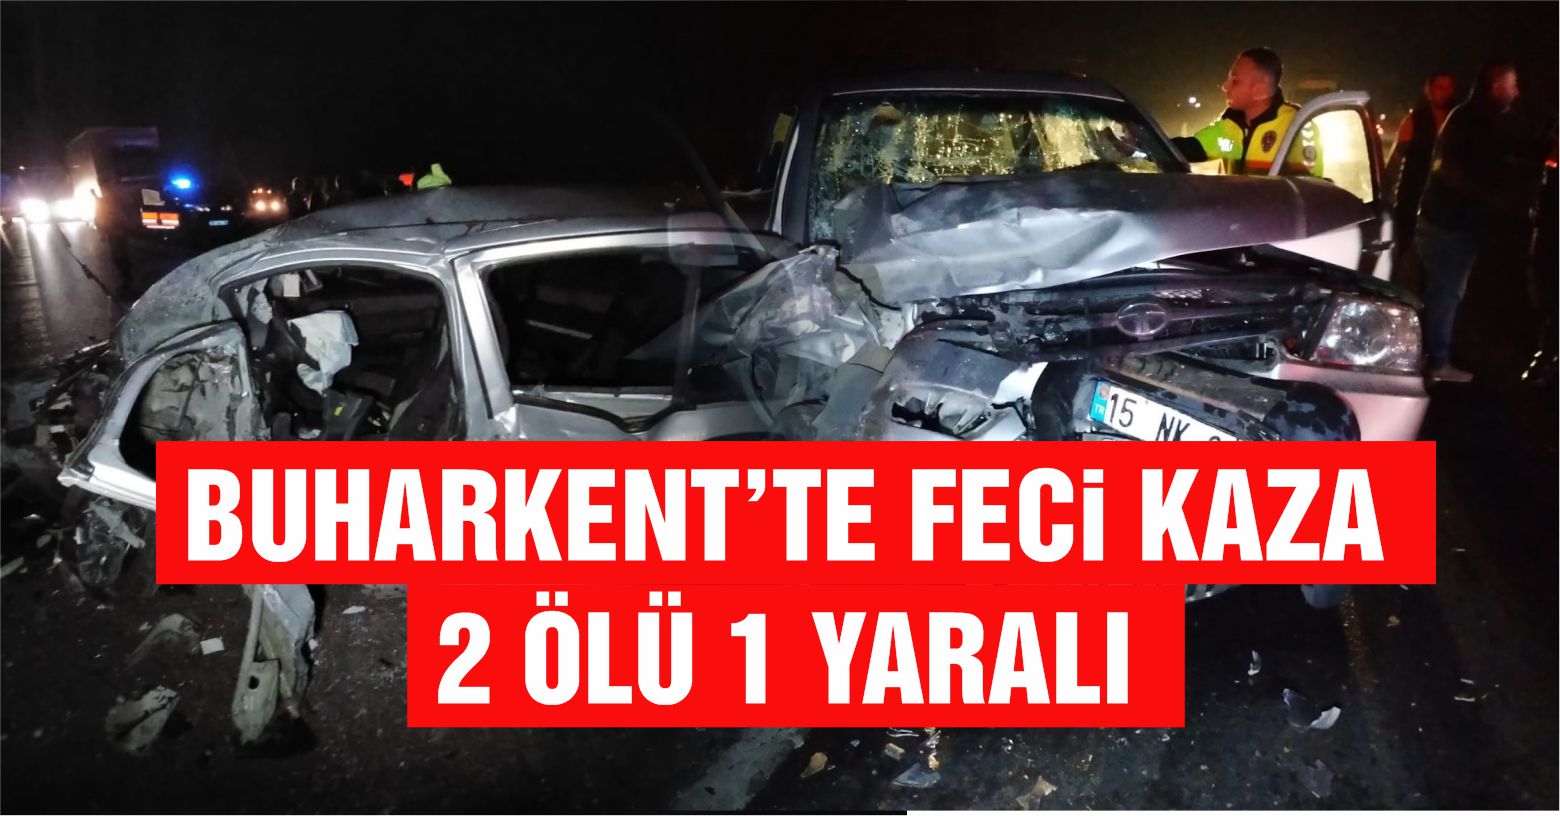 Buharkent’te 4 aracın karıştığı feci kaza: 2 ölü, 1 yaralı